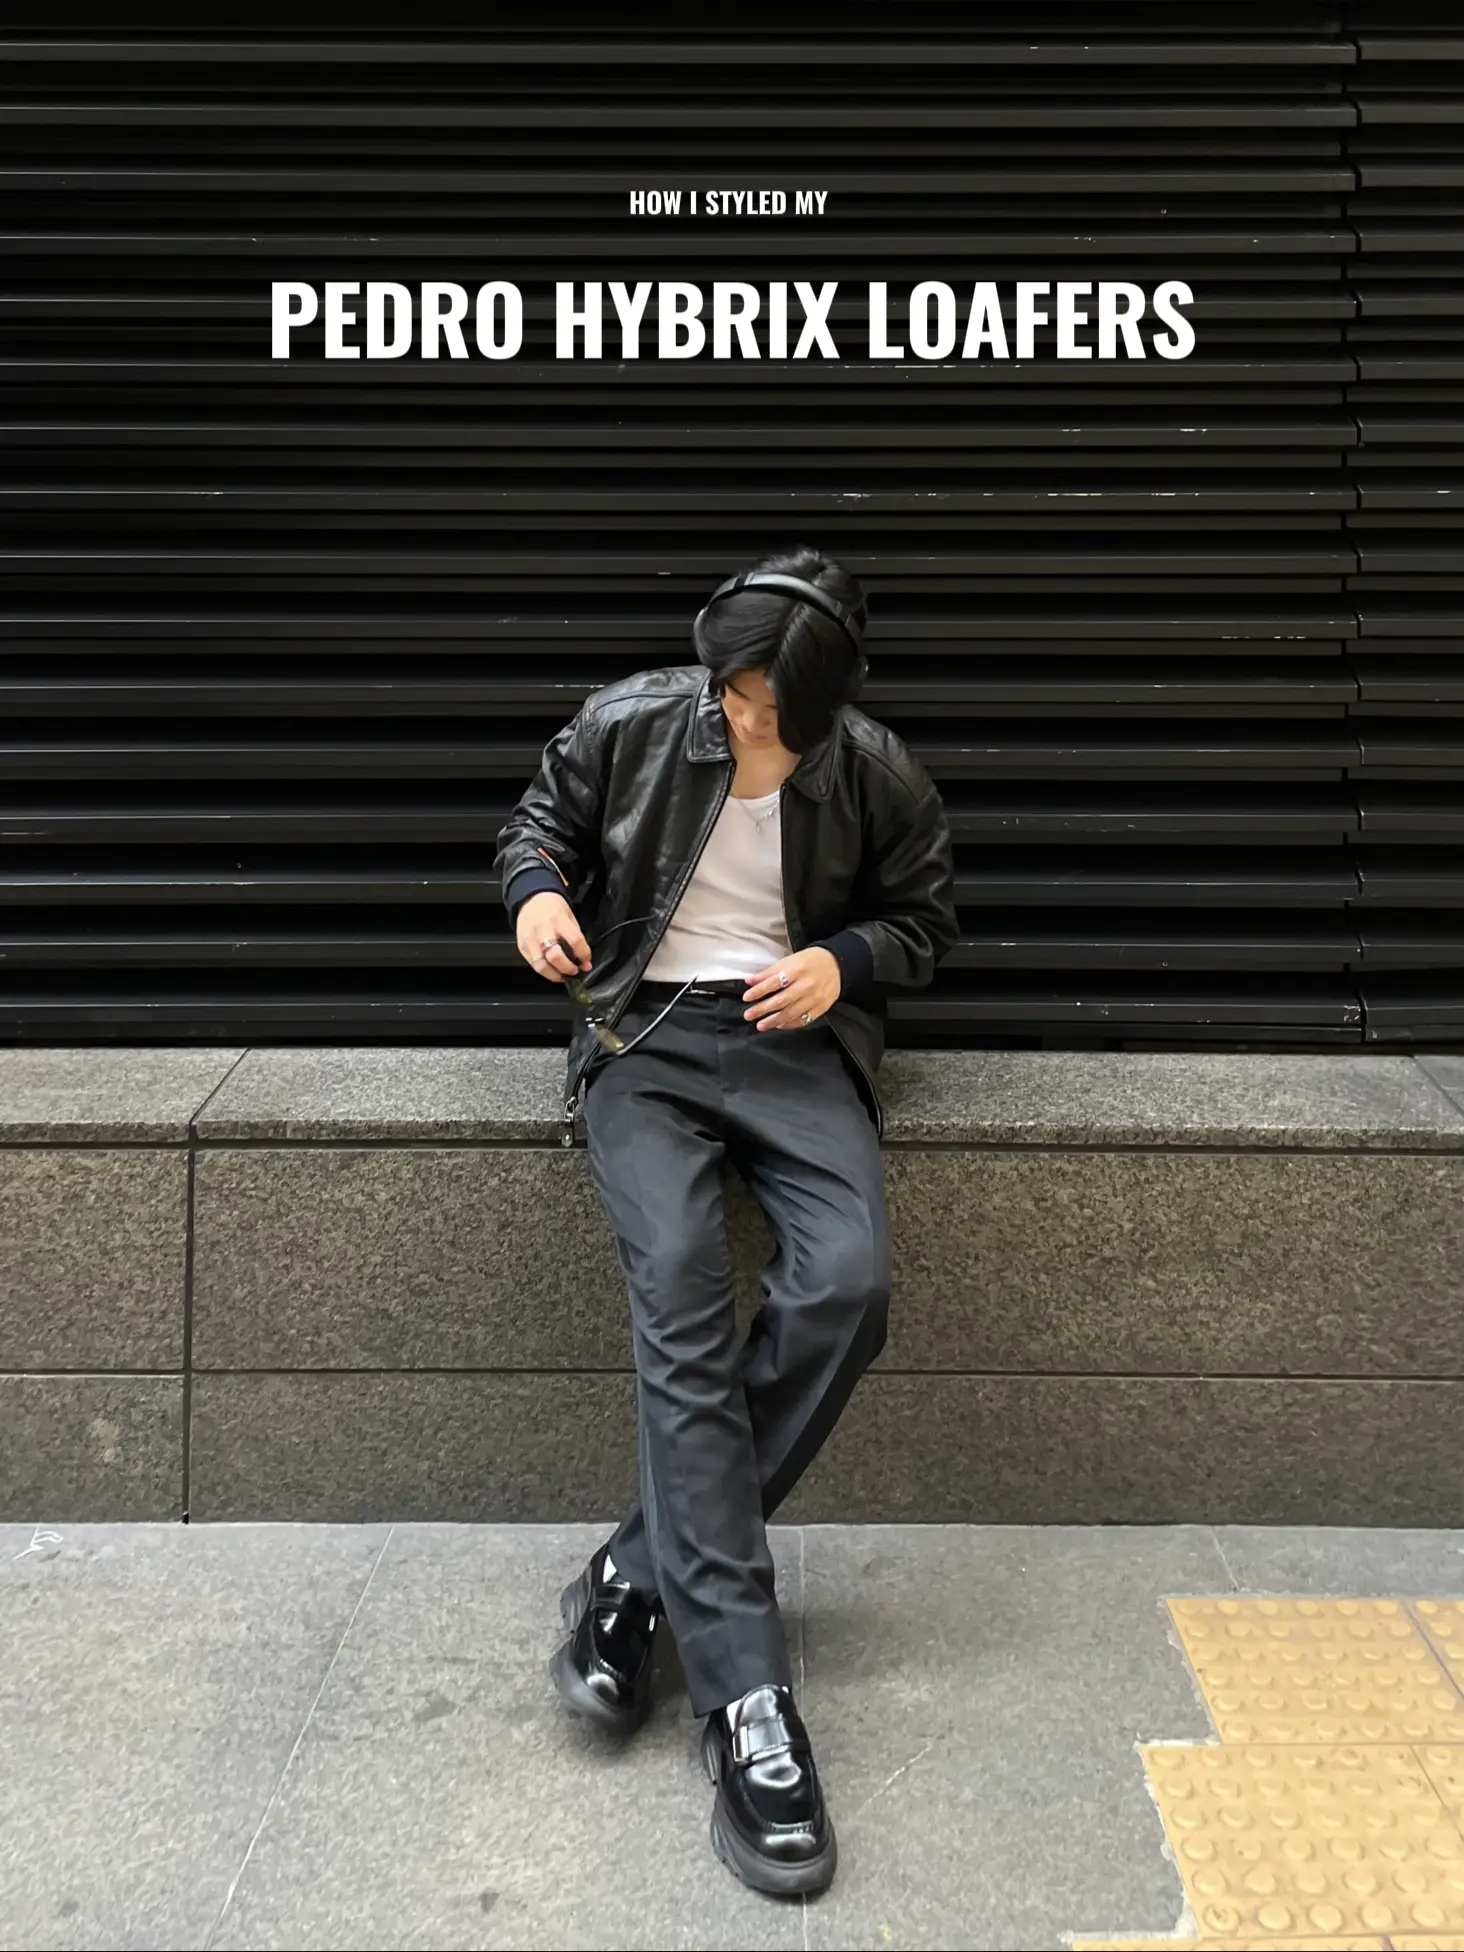 Pedro men sling bag.Get your own now!! #pedro #pedromalaysia